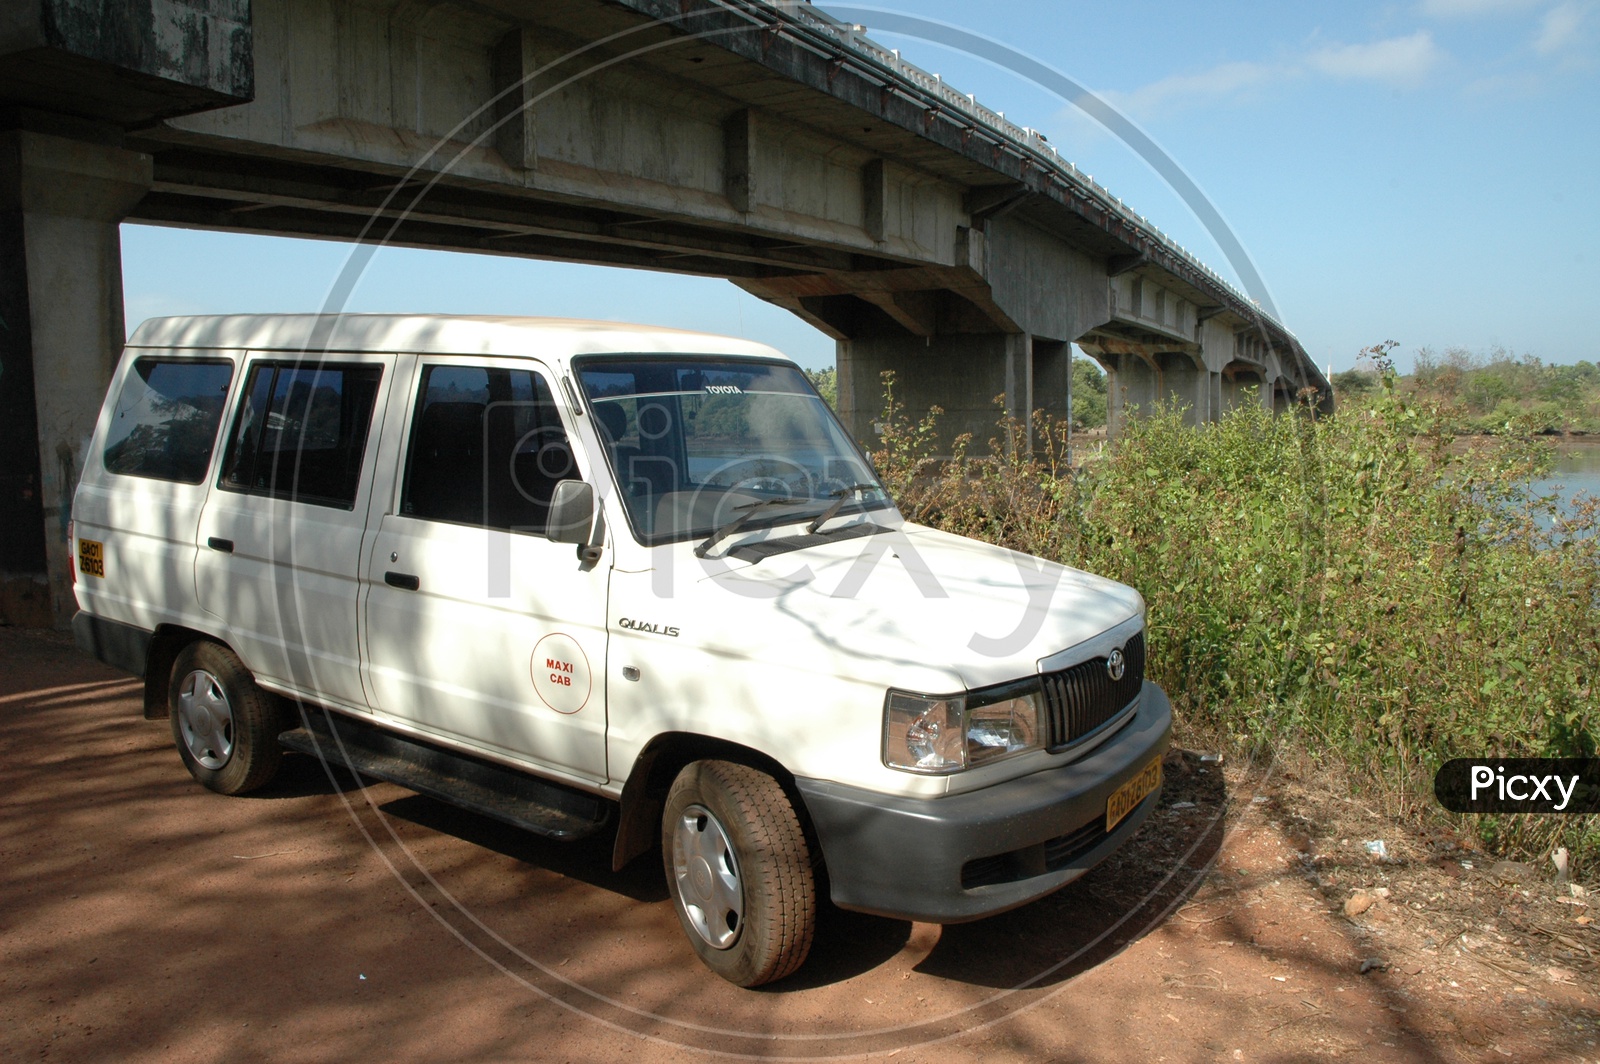 Qualis maxi cab under the bridge